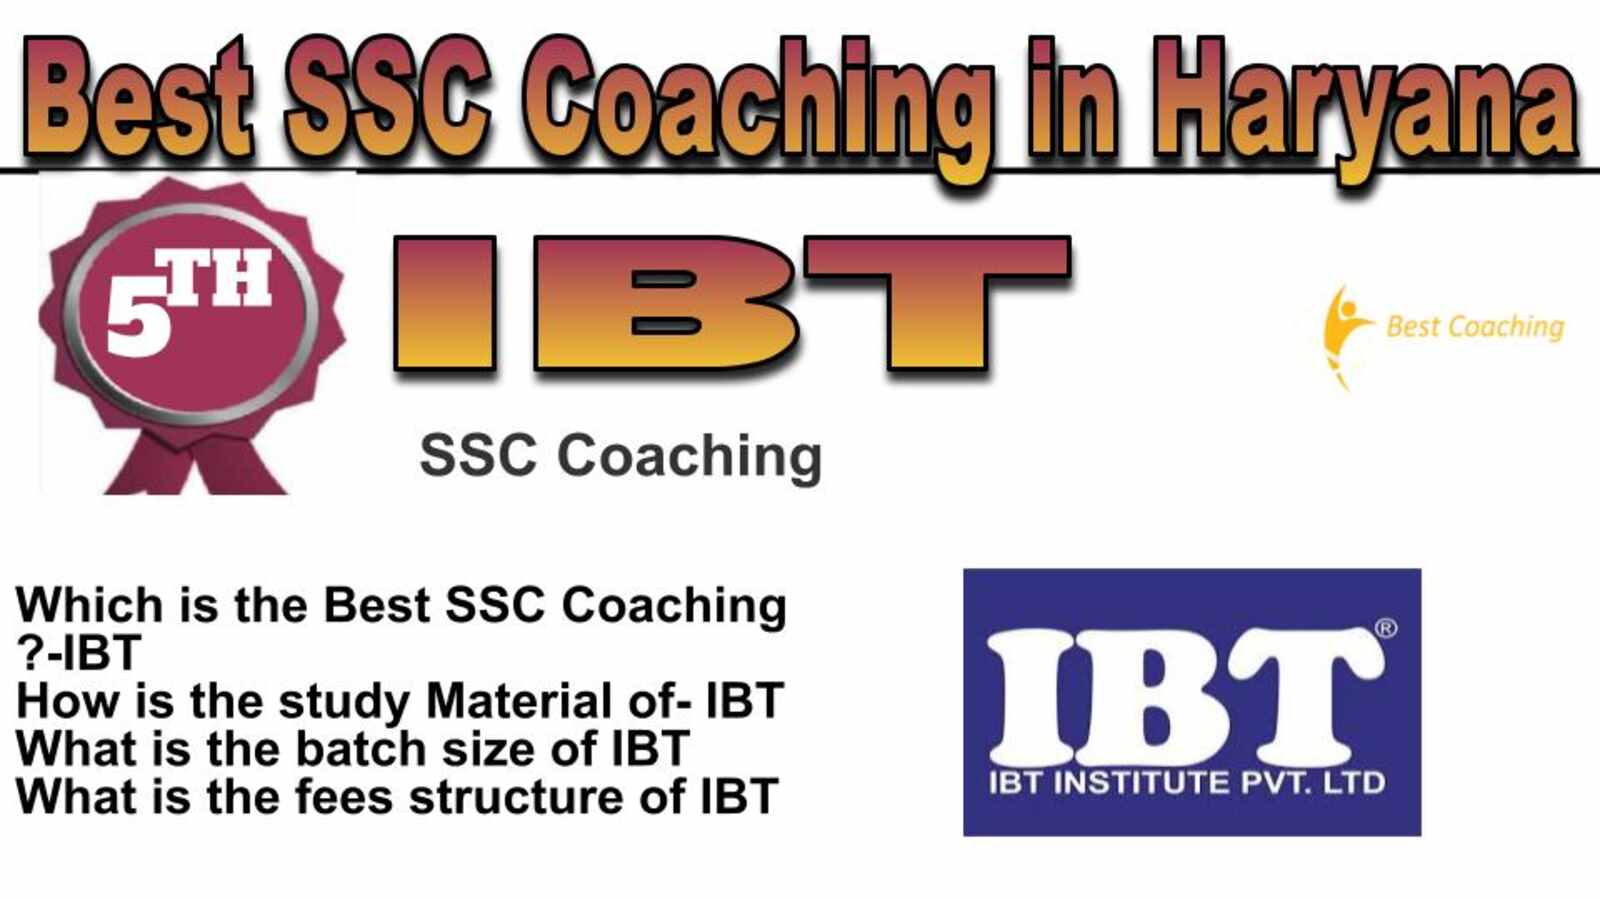 Rank 5 best SSC coaching in Haryana